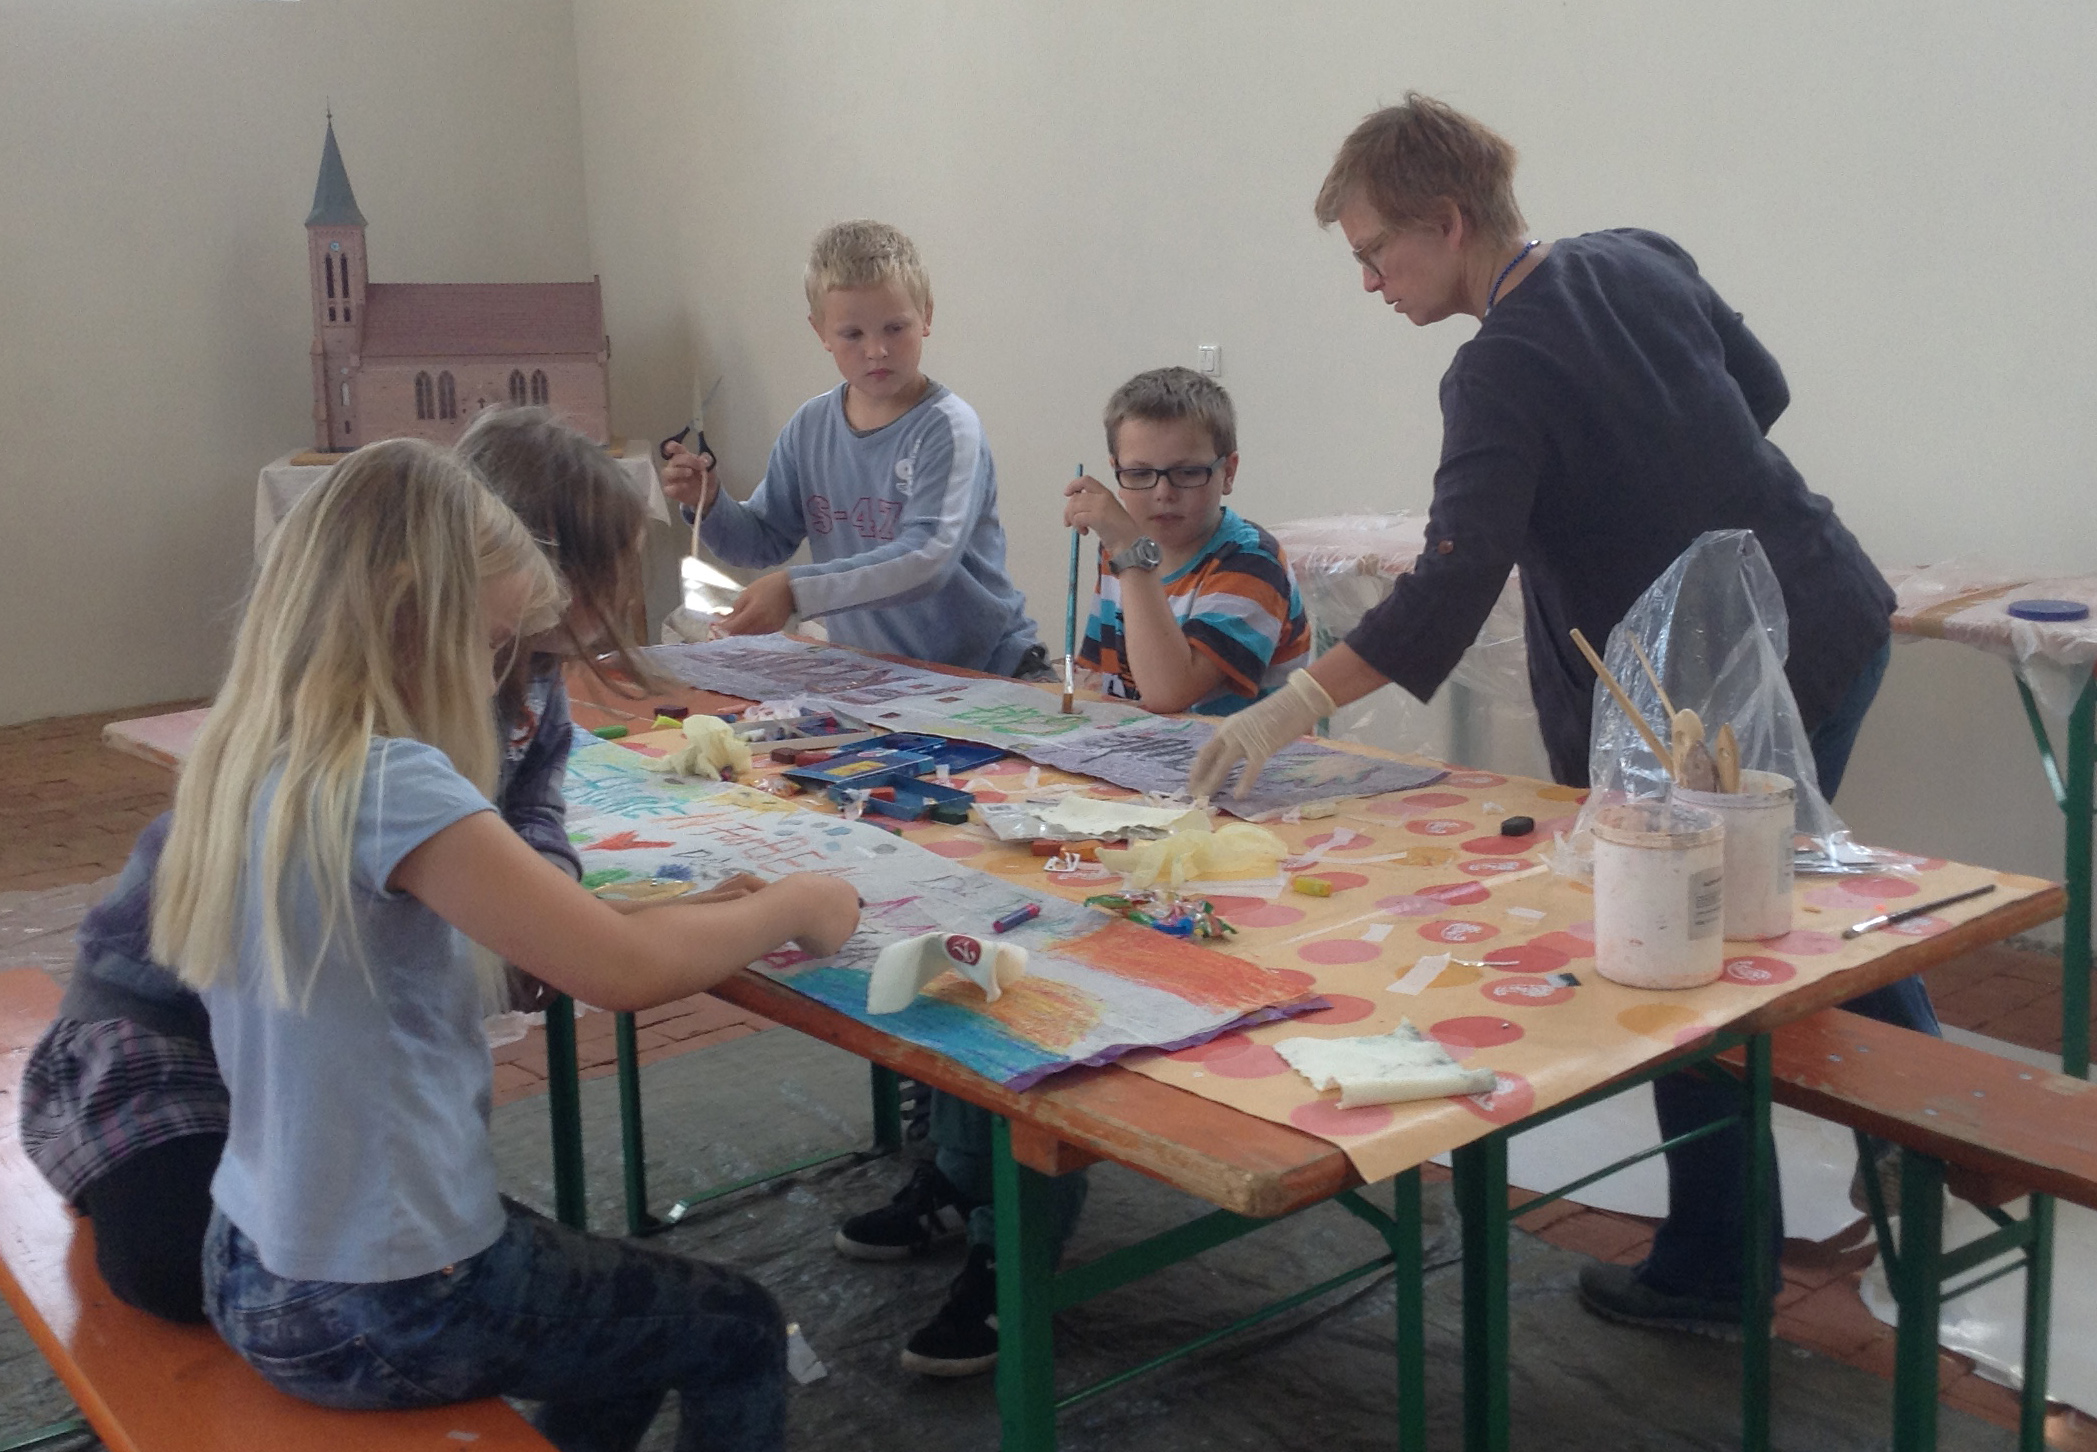 Die Künstlerin Barbara Lorenz Höfer gestaltet gemeinsam mit einer Kindergruppe in der mecklenburgischen Kirchengemeinde Rosenow "Möbiusbänder" für ihr Kunstwerk.